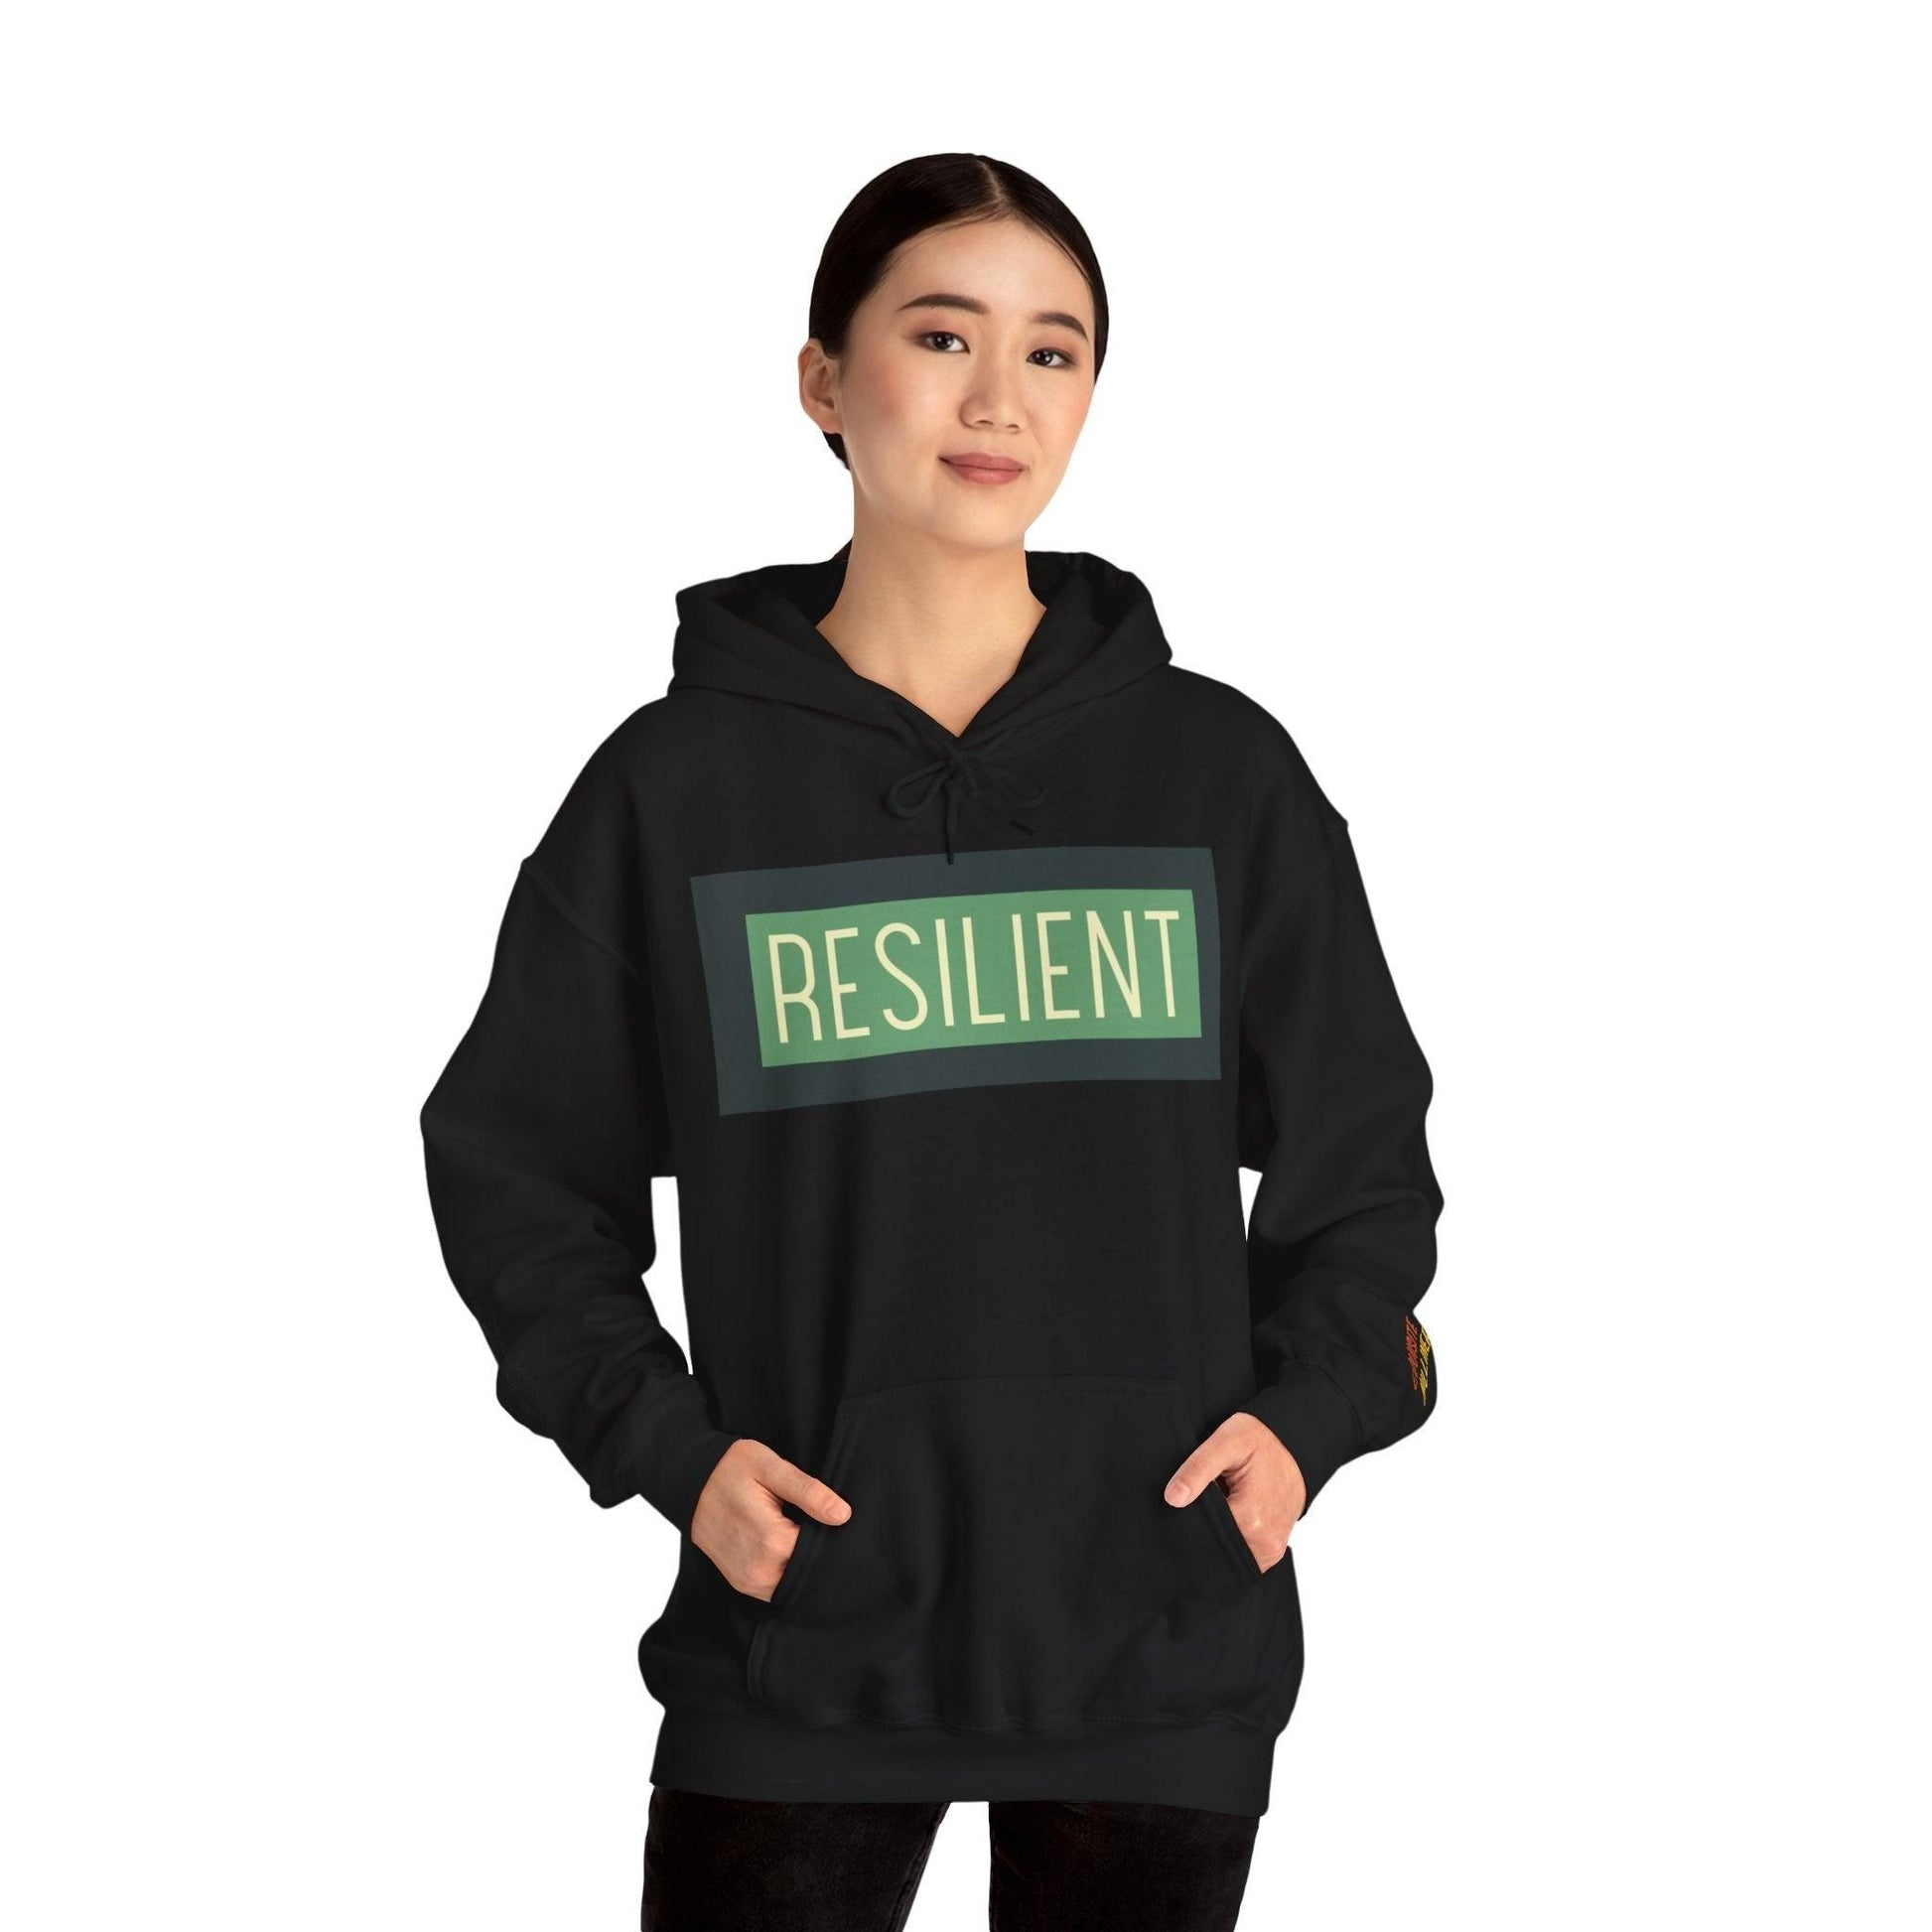 Resilient Unisex Heavy Blend Hooded Sweatshirt Hoodie Black S 